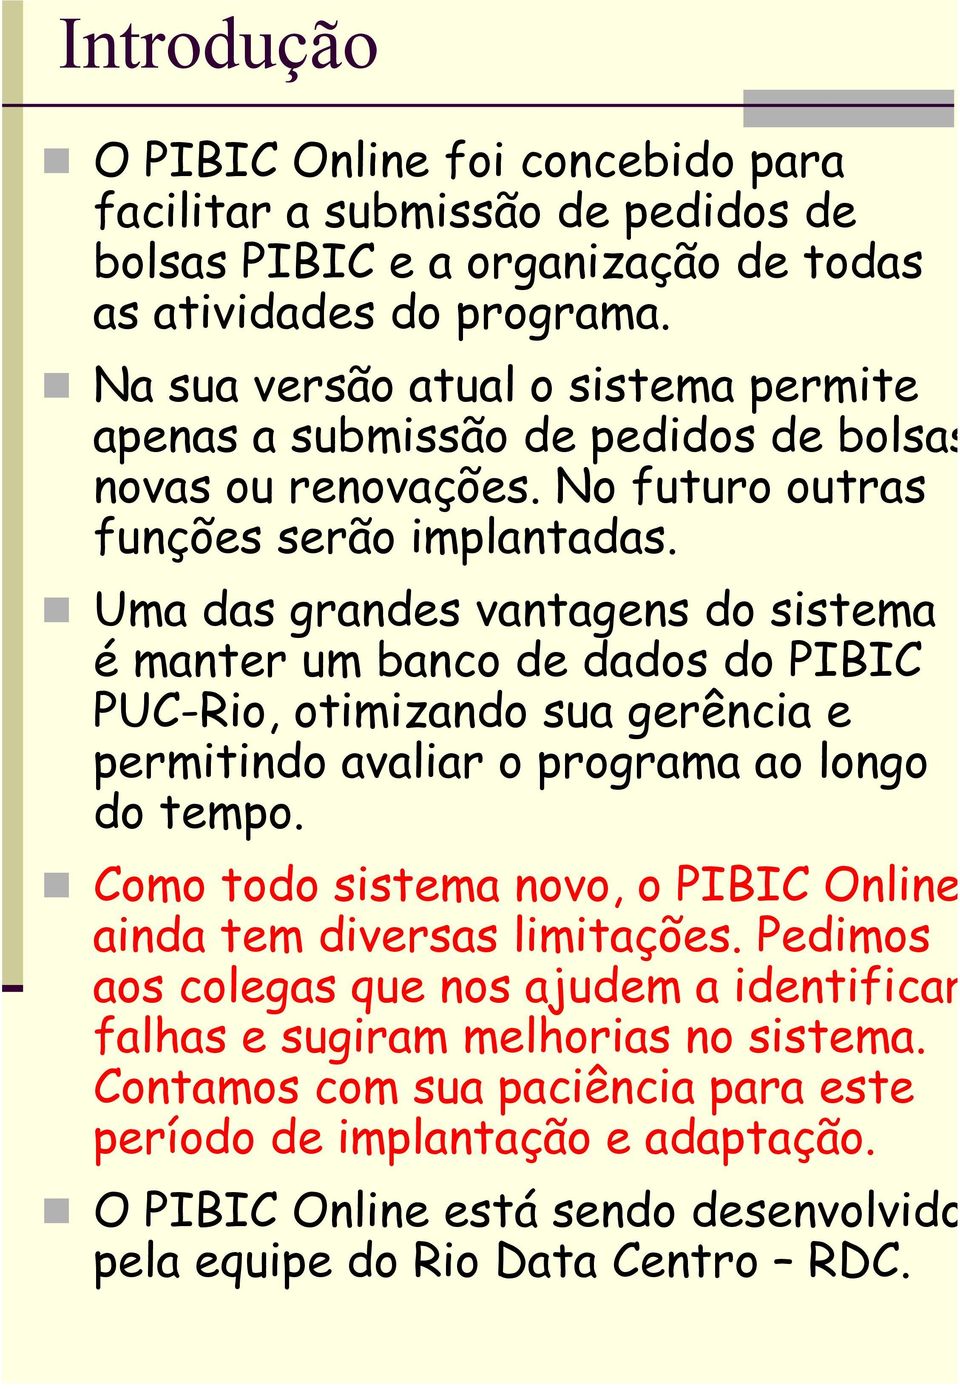 Uma das grandes vantagens do sistema é manter um banco de dados do PIBIC PUC-Rio, otimizando sua gerência e permitindo avaliar o programa ao longo do tempo.